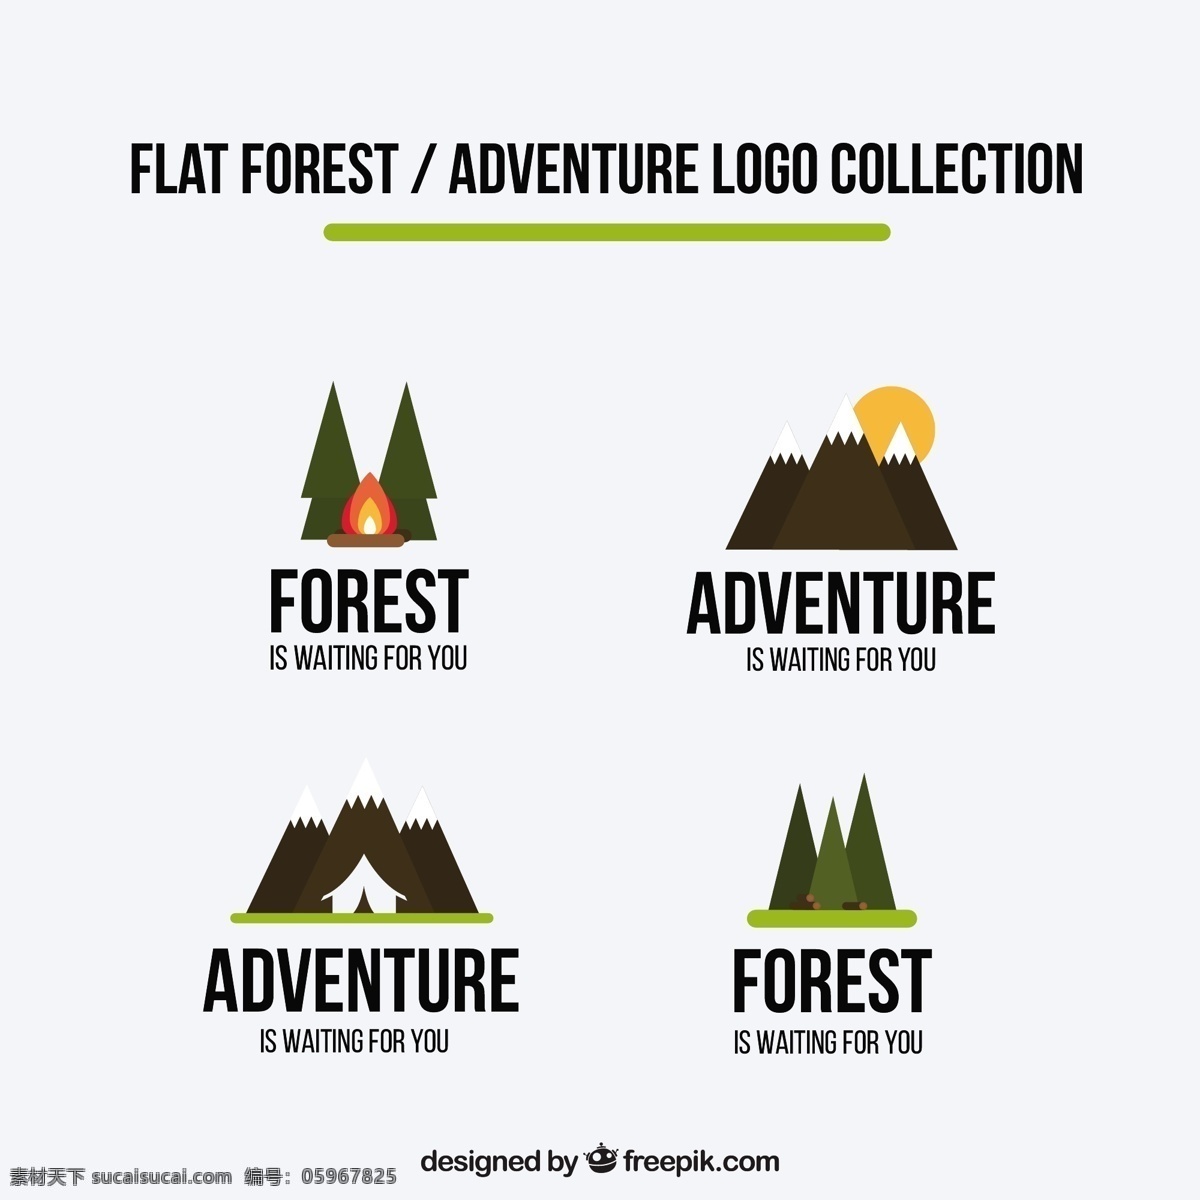 平面设计 中 标志 冒险 商业 徽章 自然 山 单位 森林 体育 标签 企业 公司 品牌 野营 贴纸 企业身份